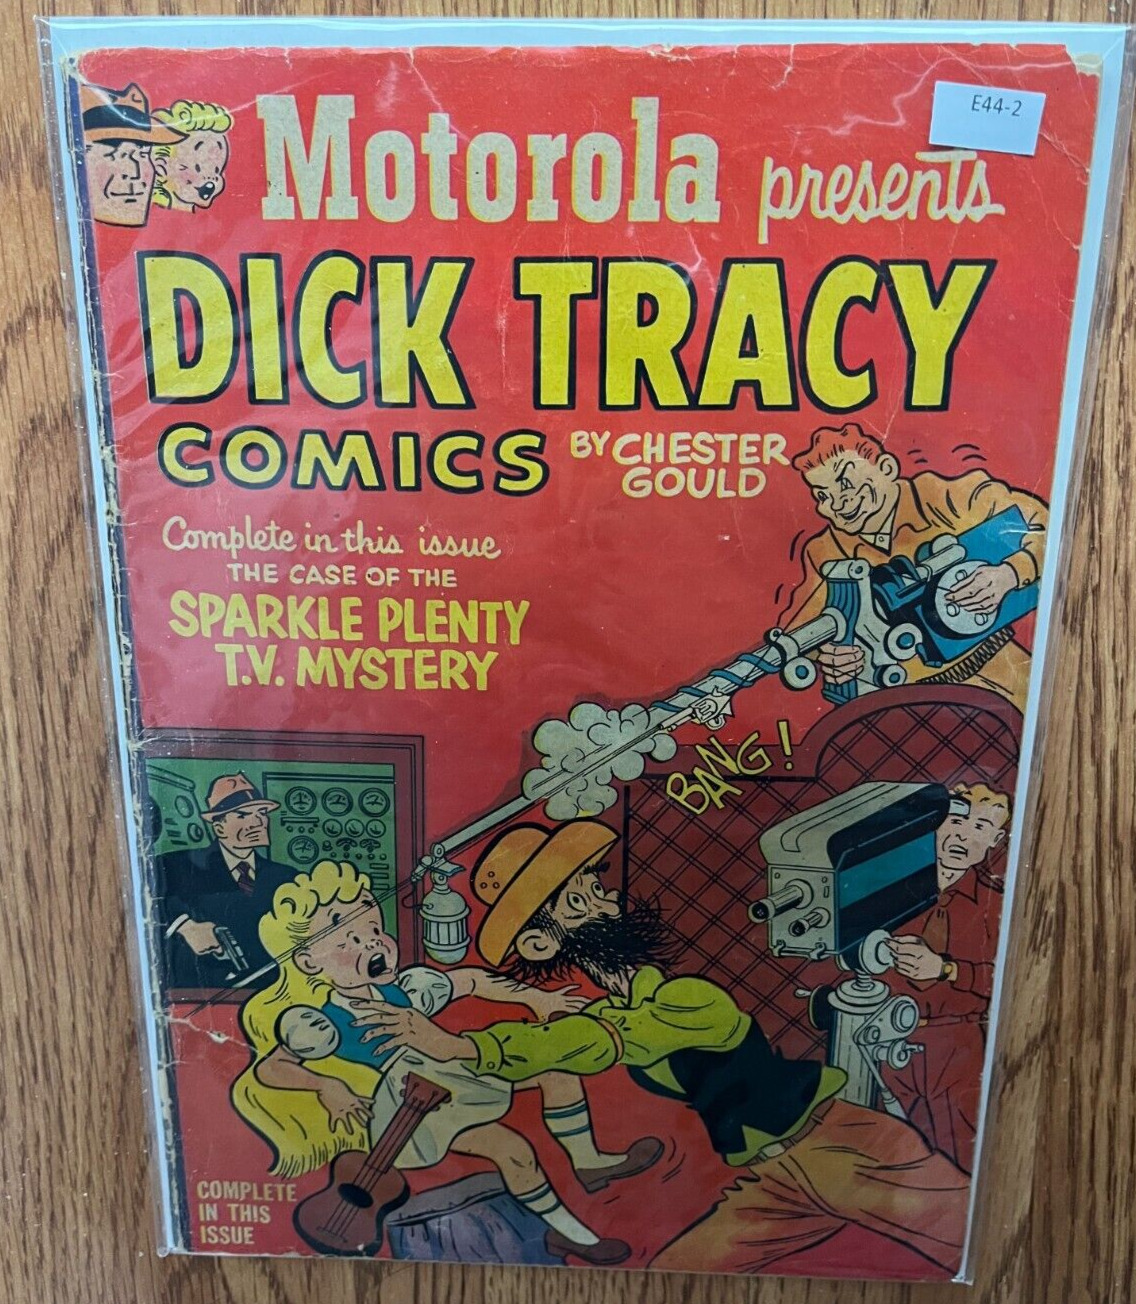 Motorola Presents Dick Tracy Comics 1.5 - E44-2